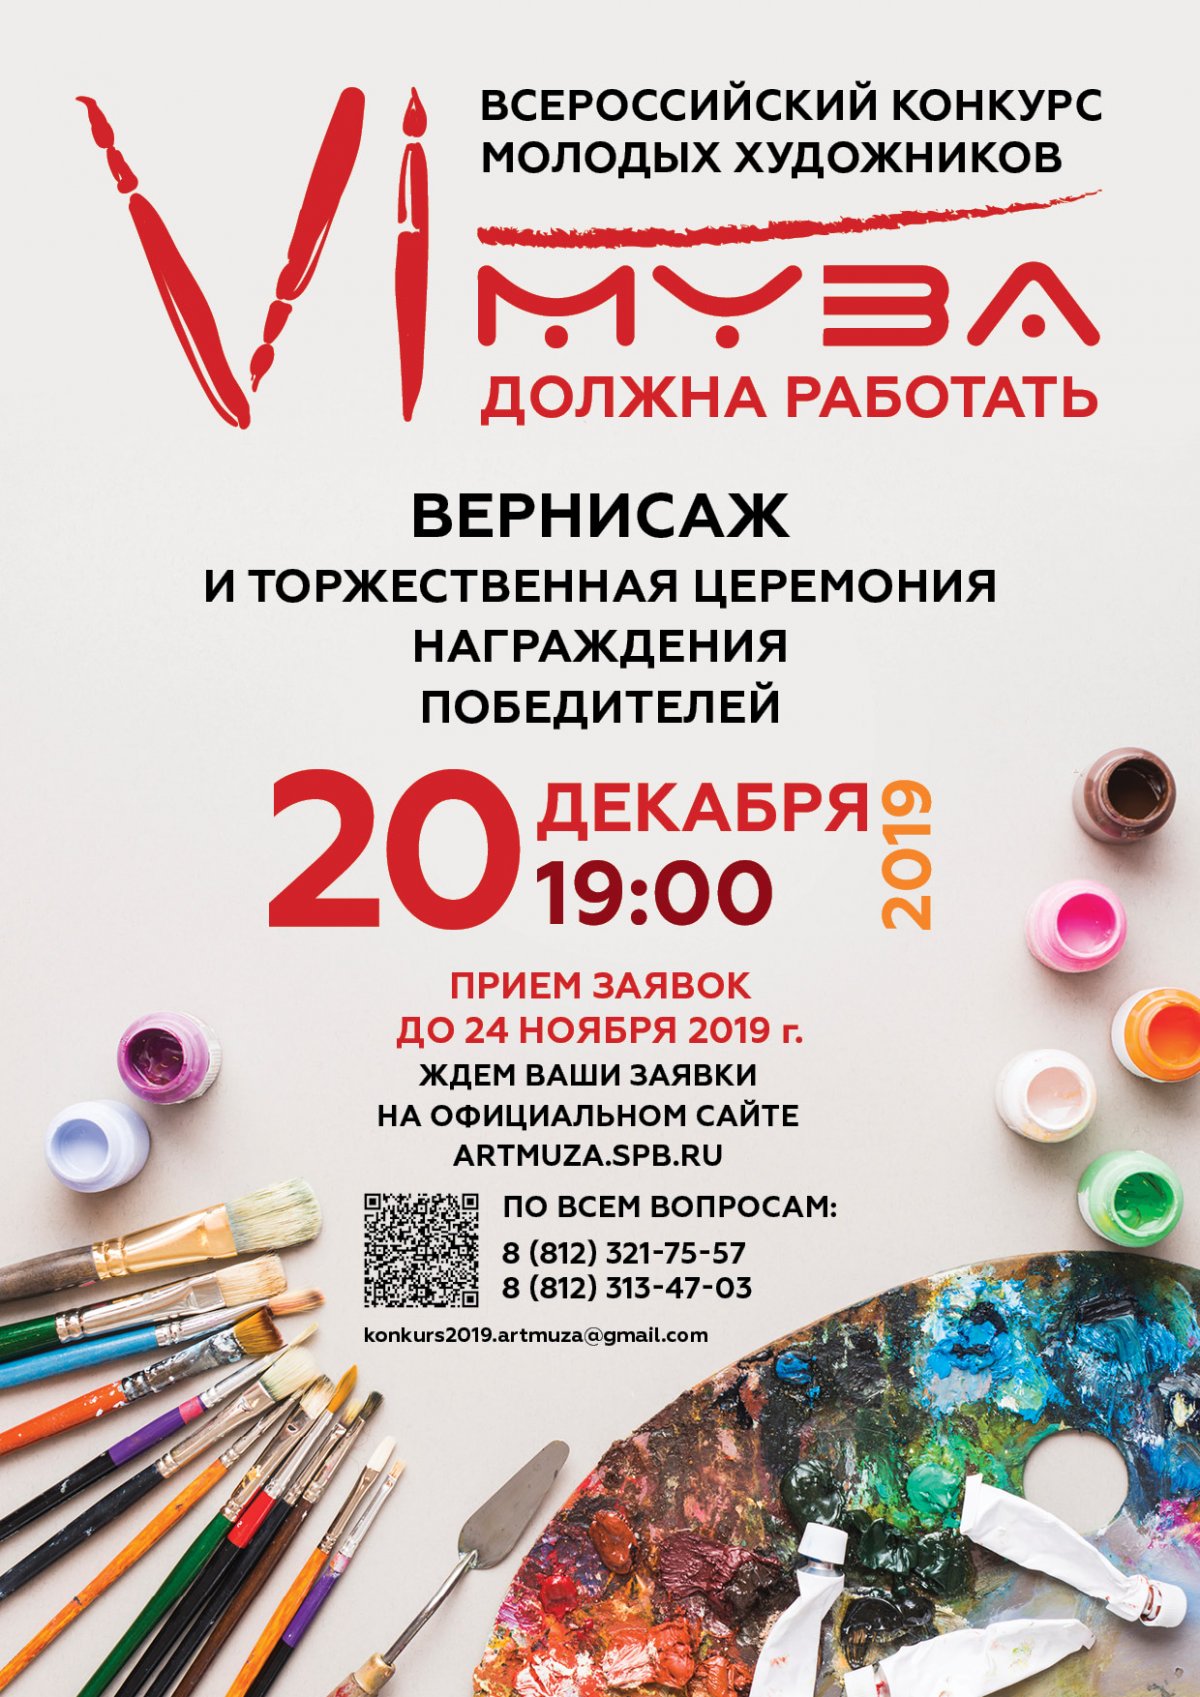 Стань победителем Всероссийского Конкурса художников «Муза должна работать» в АРТМУЗЕ!